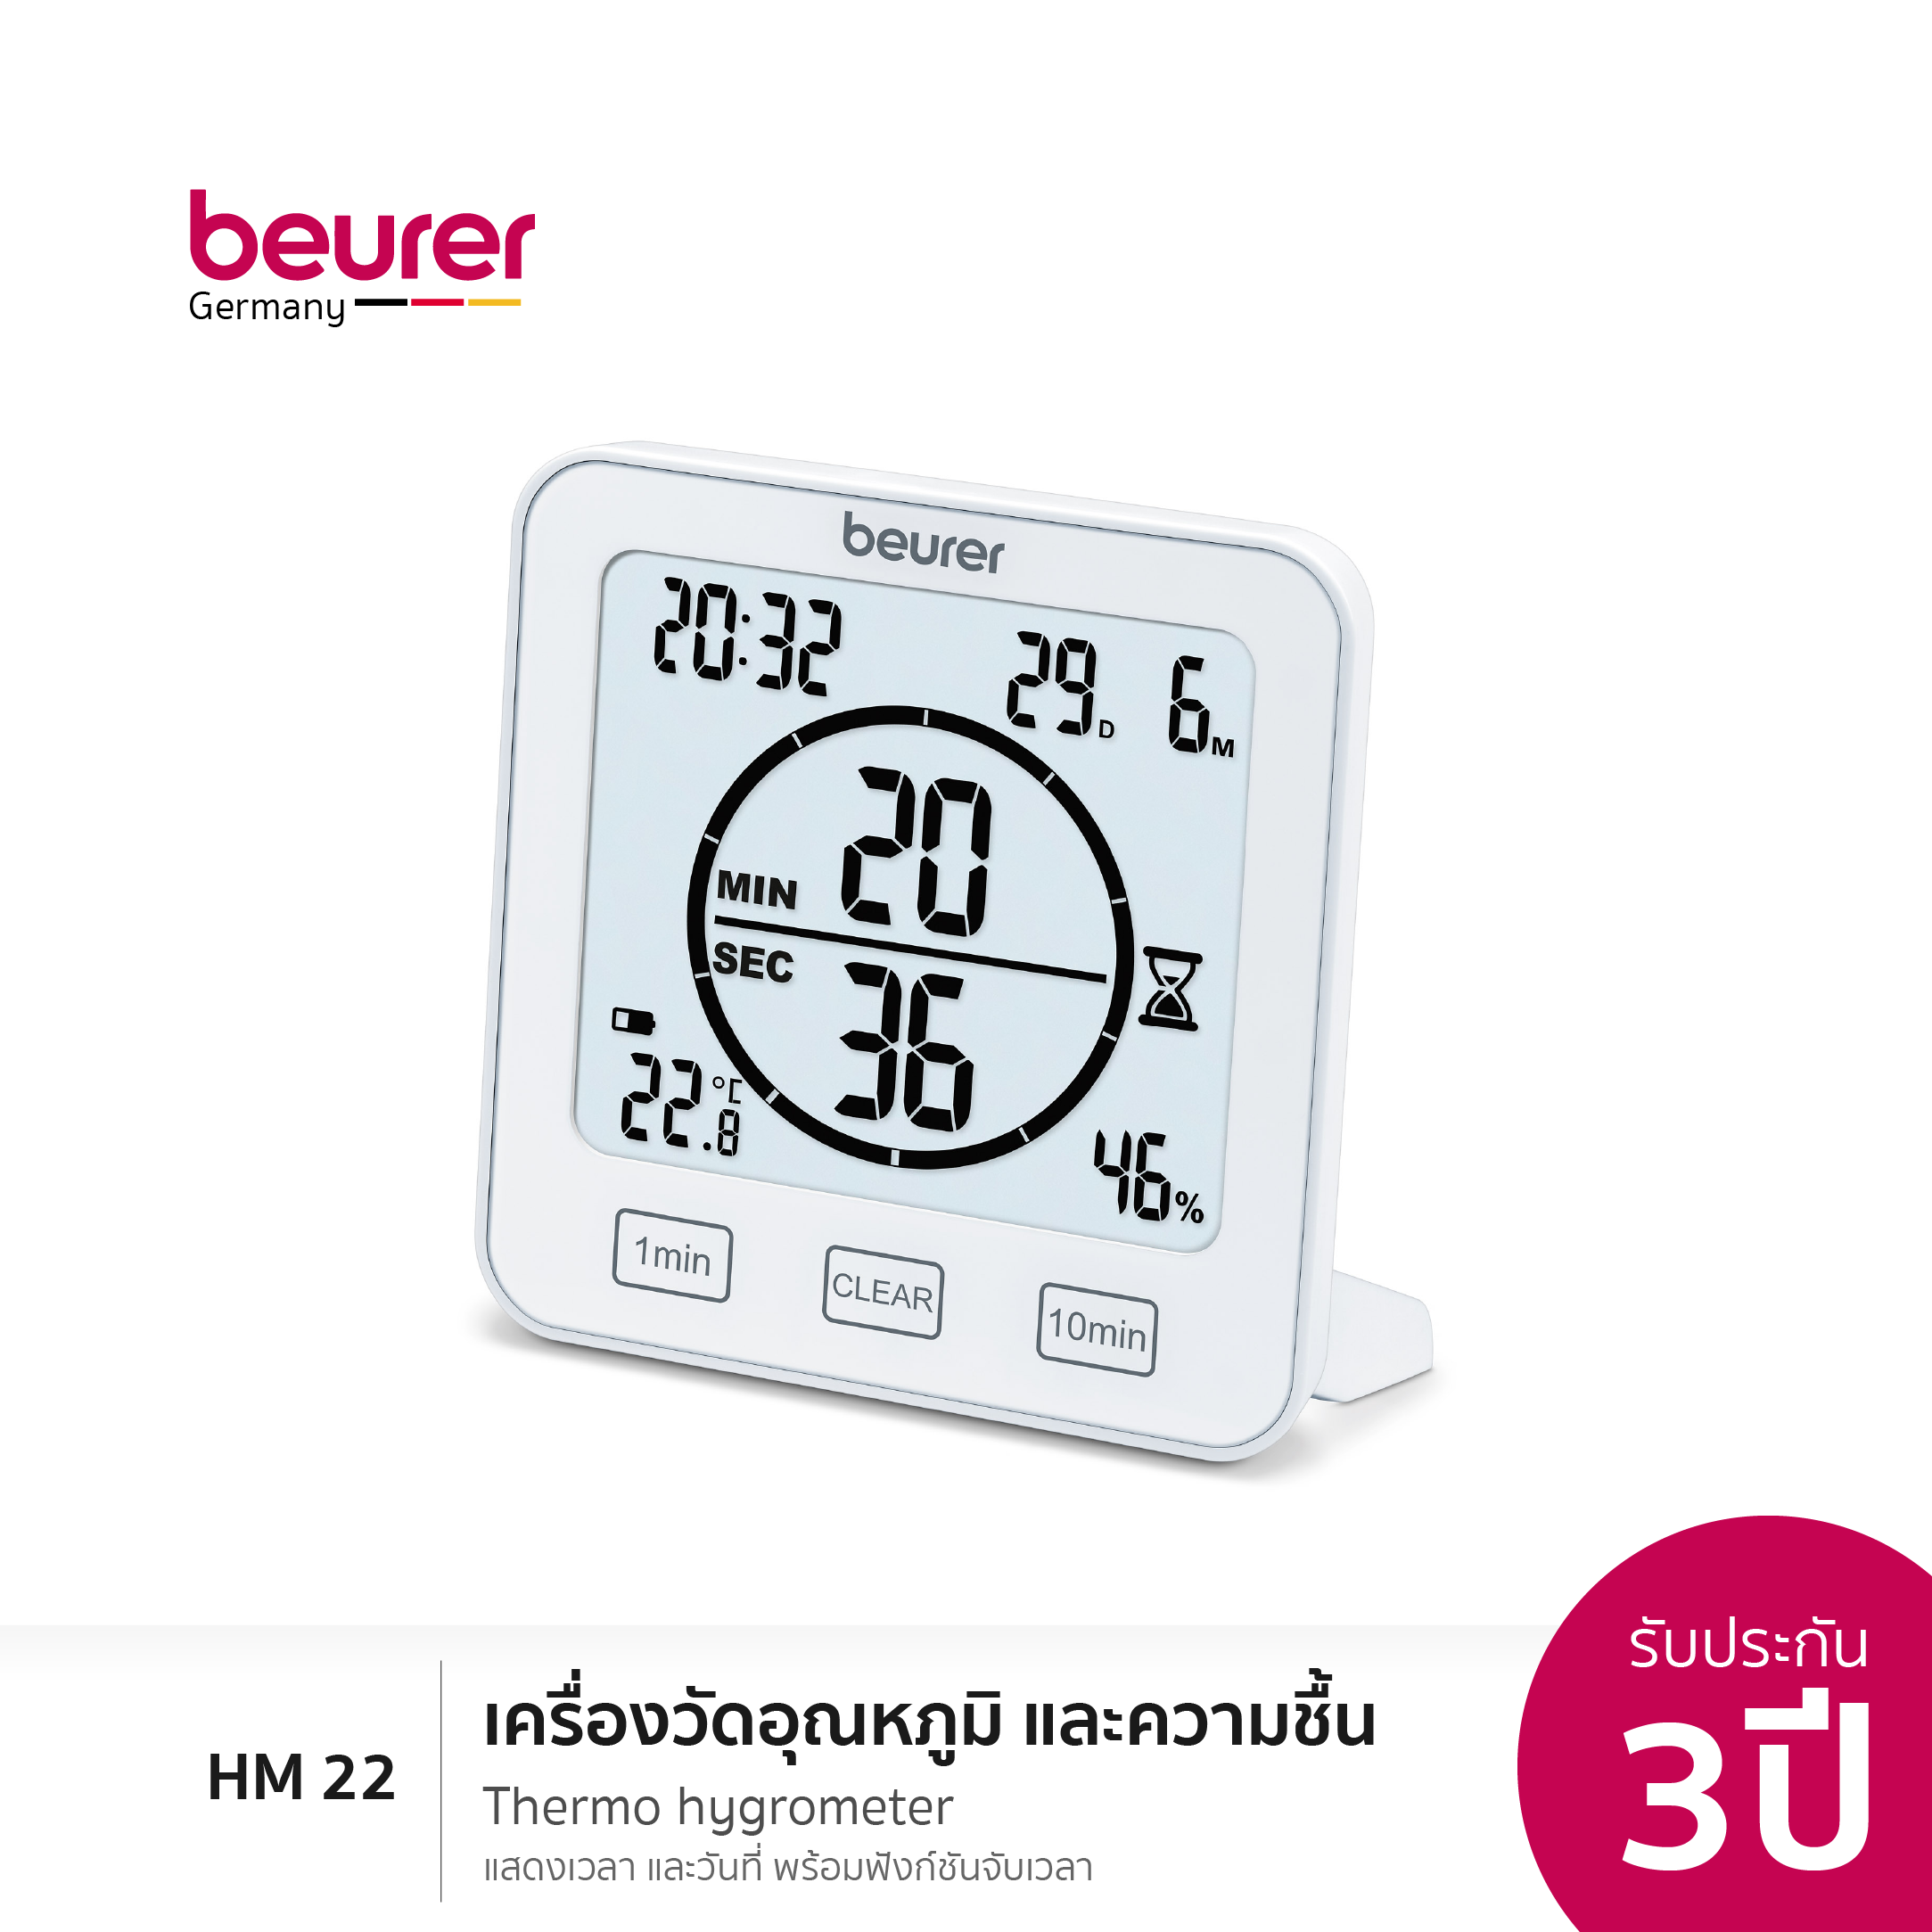 [รับประกัน 3 ปี] Beurer HM 22 Thermo Hygrometer เครื่องวัดอุณหภูมิ และความชื้นในอากาศ รุ่น HM 22